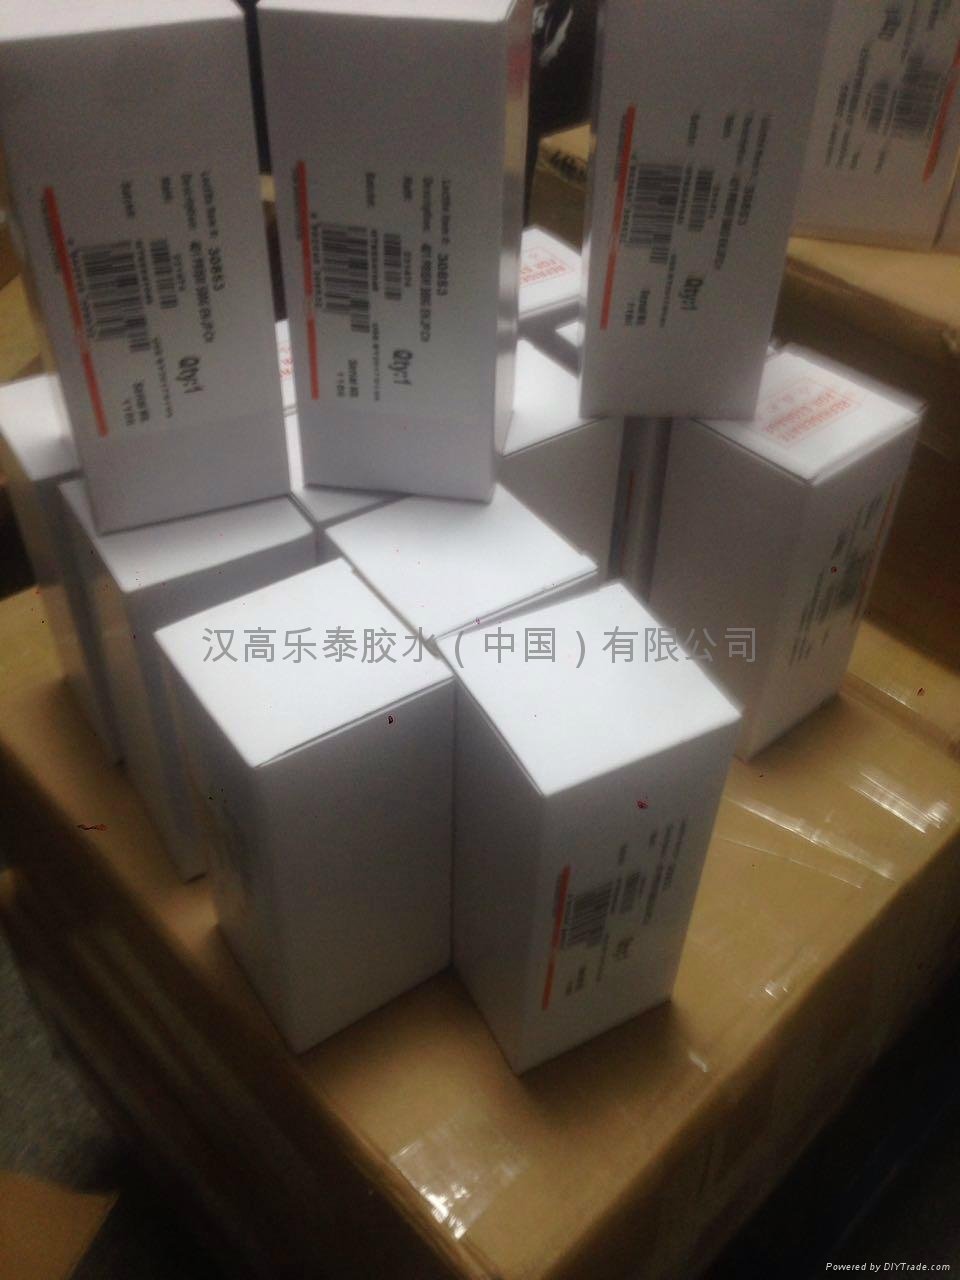 Loctite 401 glue loctite henkel loctite 401 glue in China 4